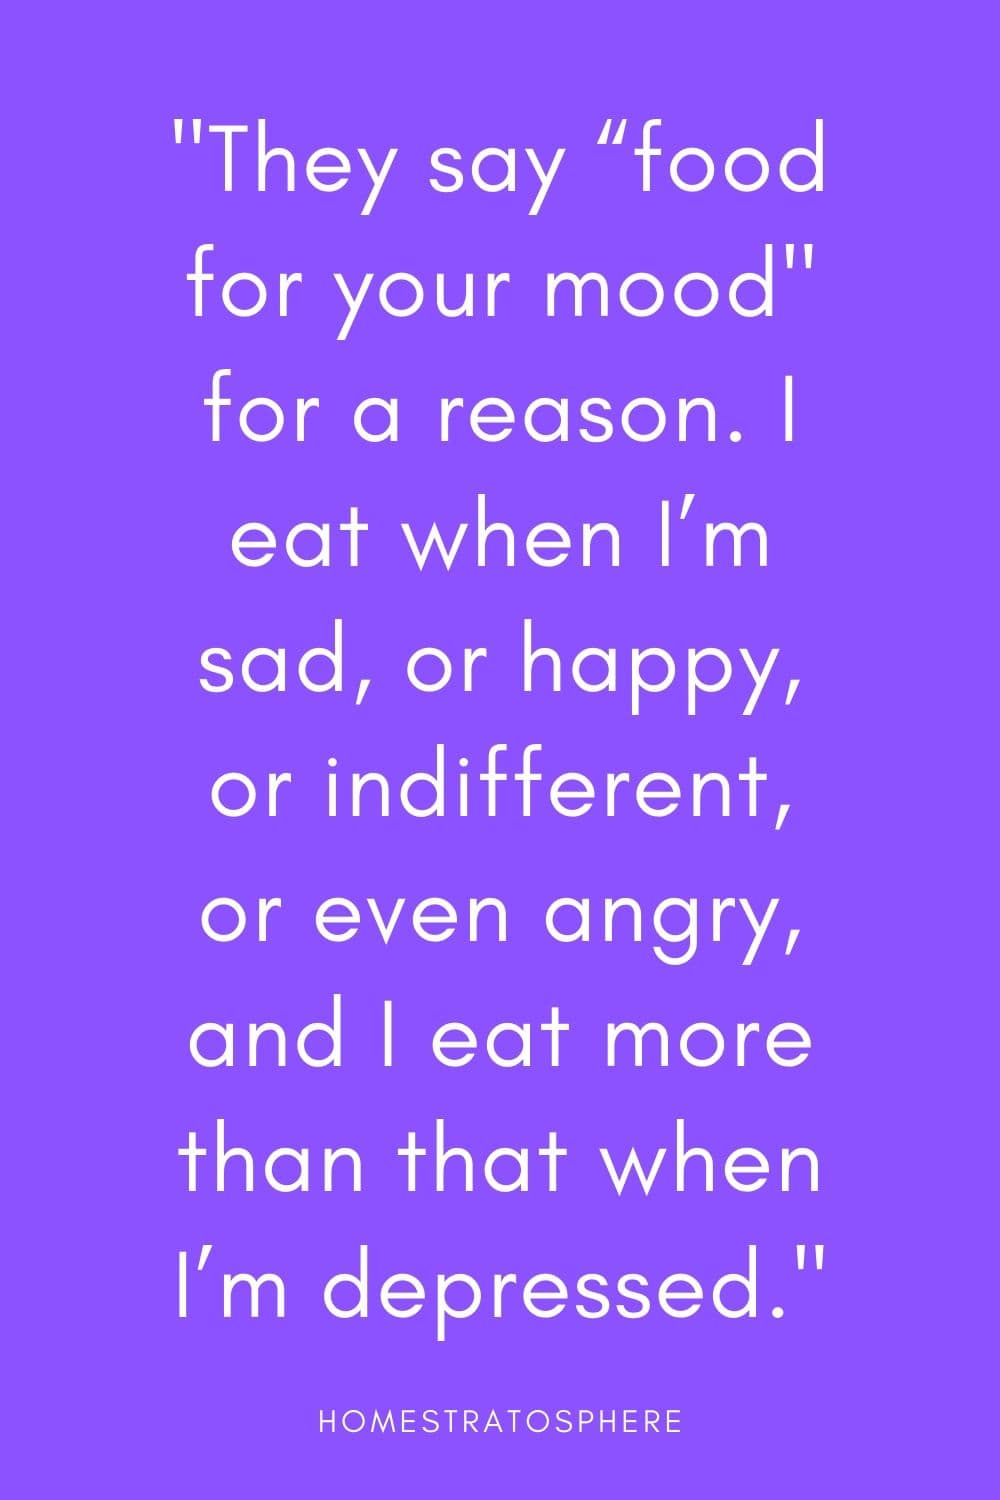 人们常说“食物改善情绪”是有原因的。当我悲伤、快乐、冷漠、甚至生气时，我就会吃东西，而当我沮丧时，我吃得更多。”